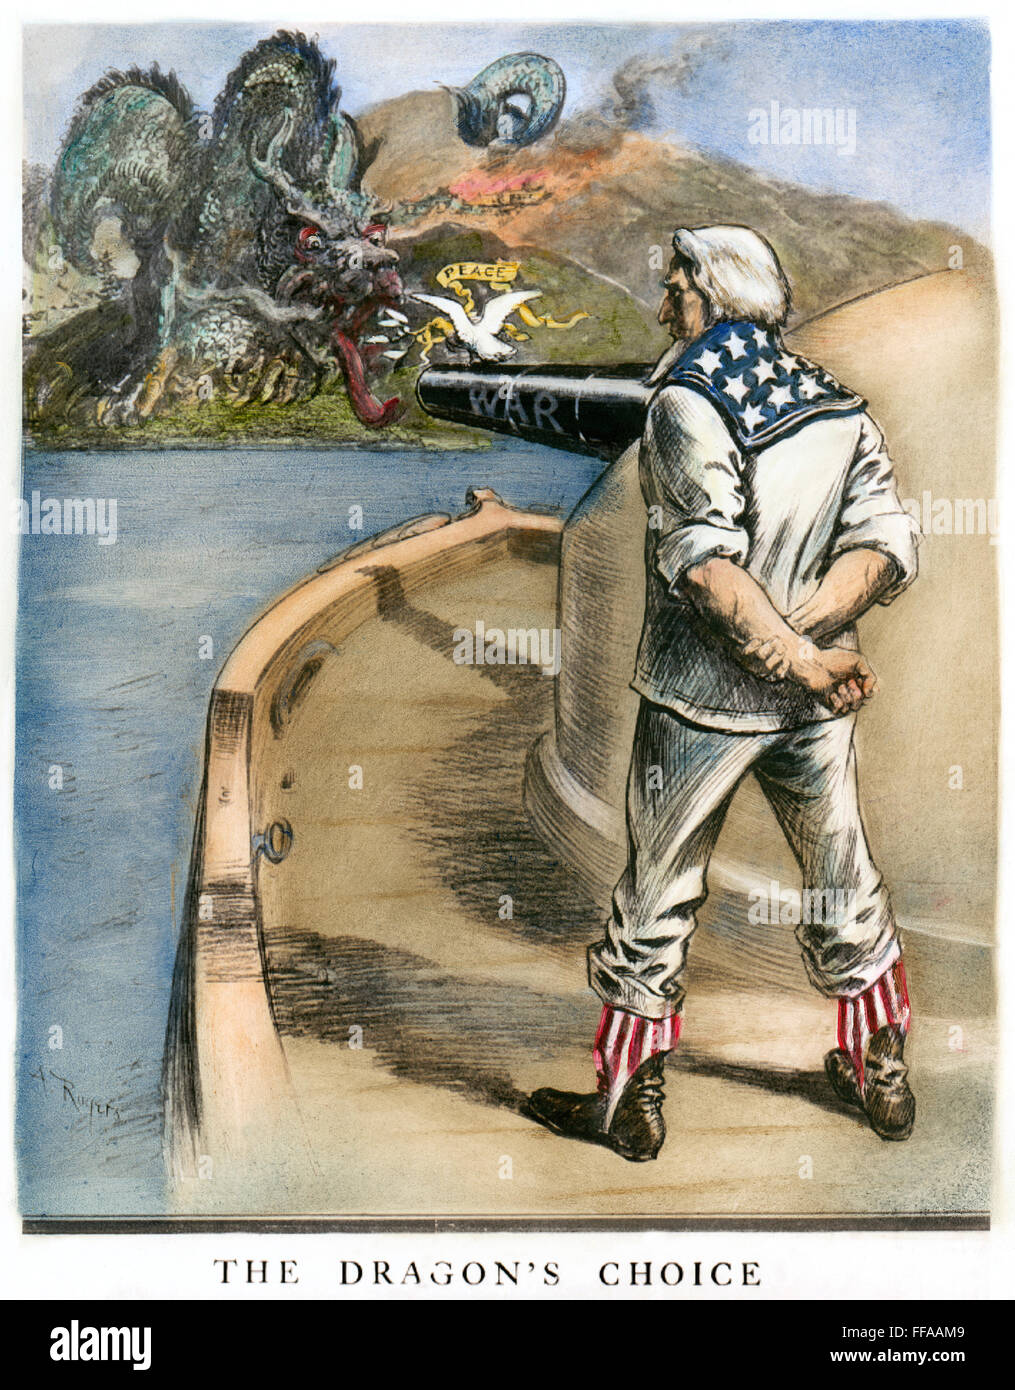 BOXER AUFSTAND CARTOON. /n'The Dragon-Wahl ": amerikanische cartoon, 1900 von w.a. Rogers zeigt eine feste Uncle Sam, der chinesische Drache eine Wahlmöglichkeit zwischen Krieg und Frieden auf der Höhe des Boxeraufstandes. Stockfoto